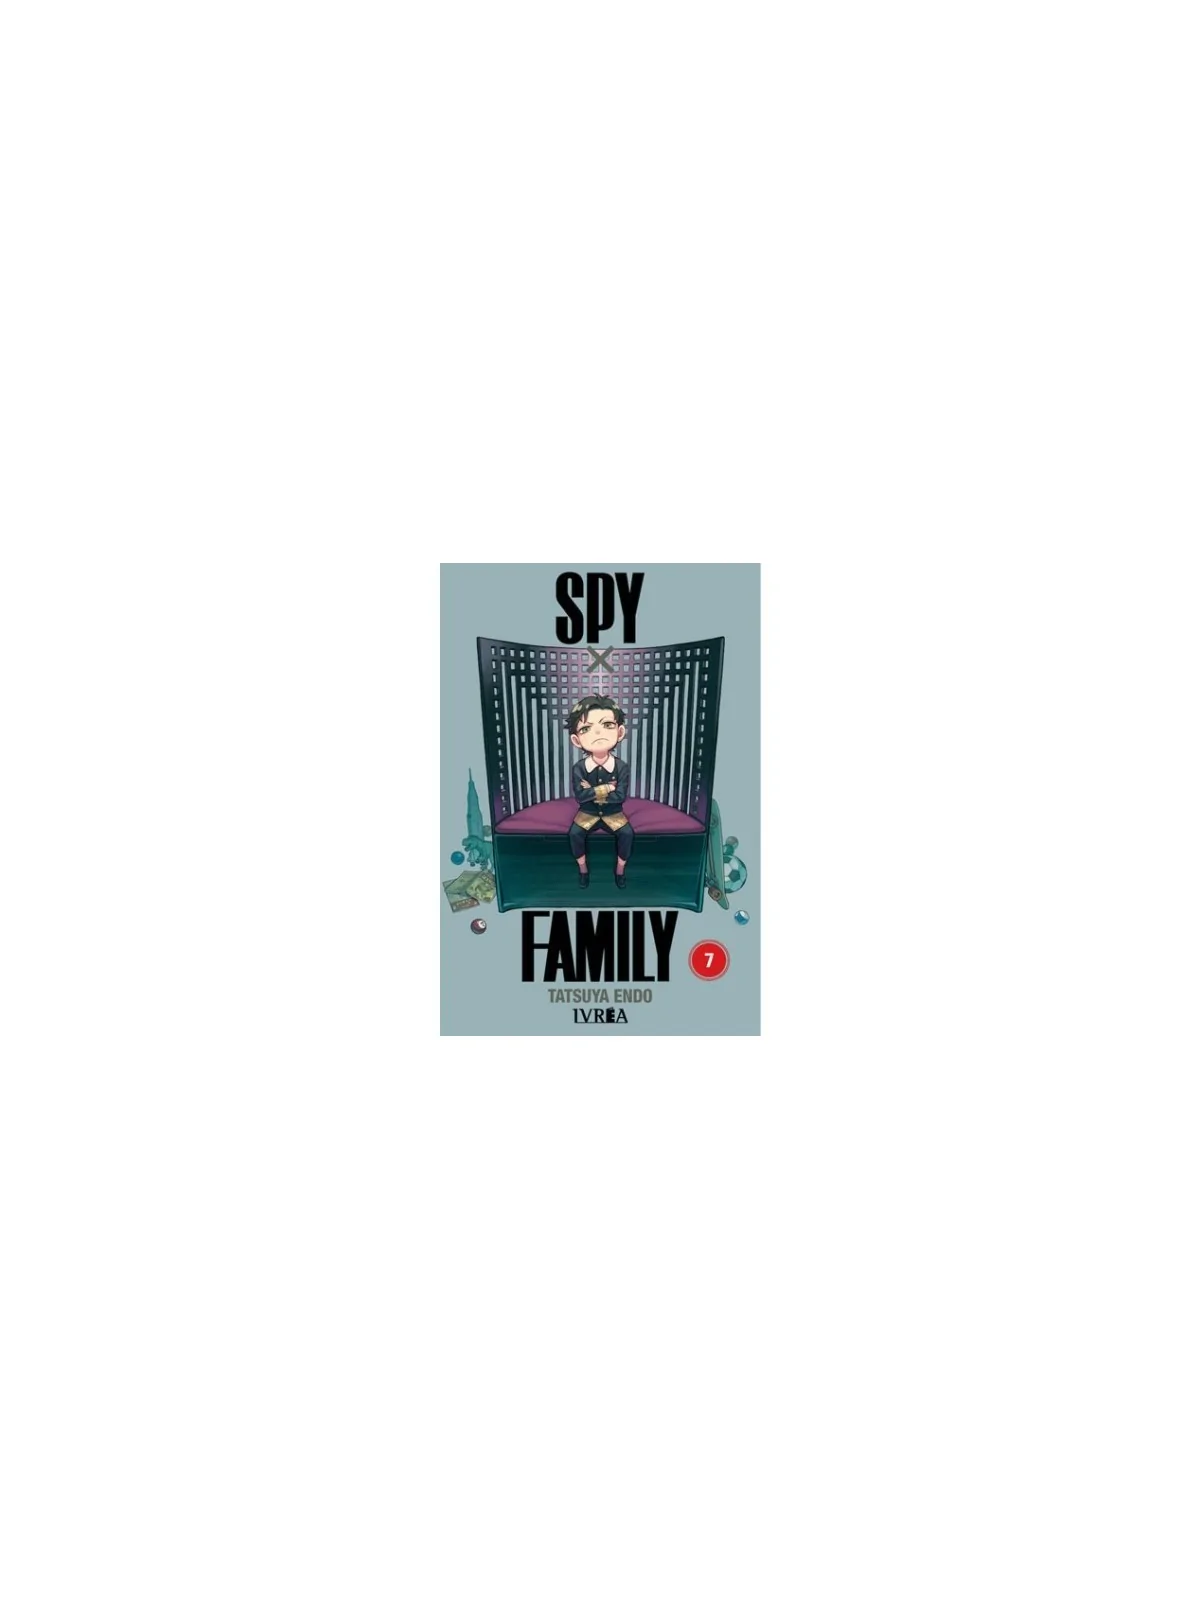 Comprar Spy x Family 07 barato al mejor precio 7,60 € de Ivrea